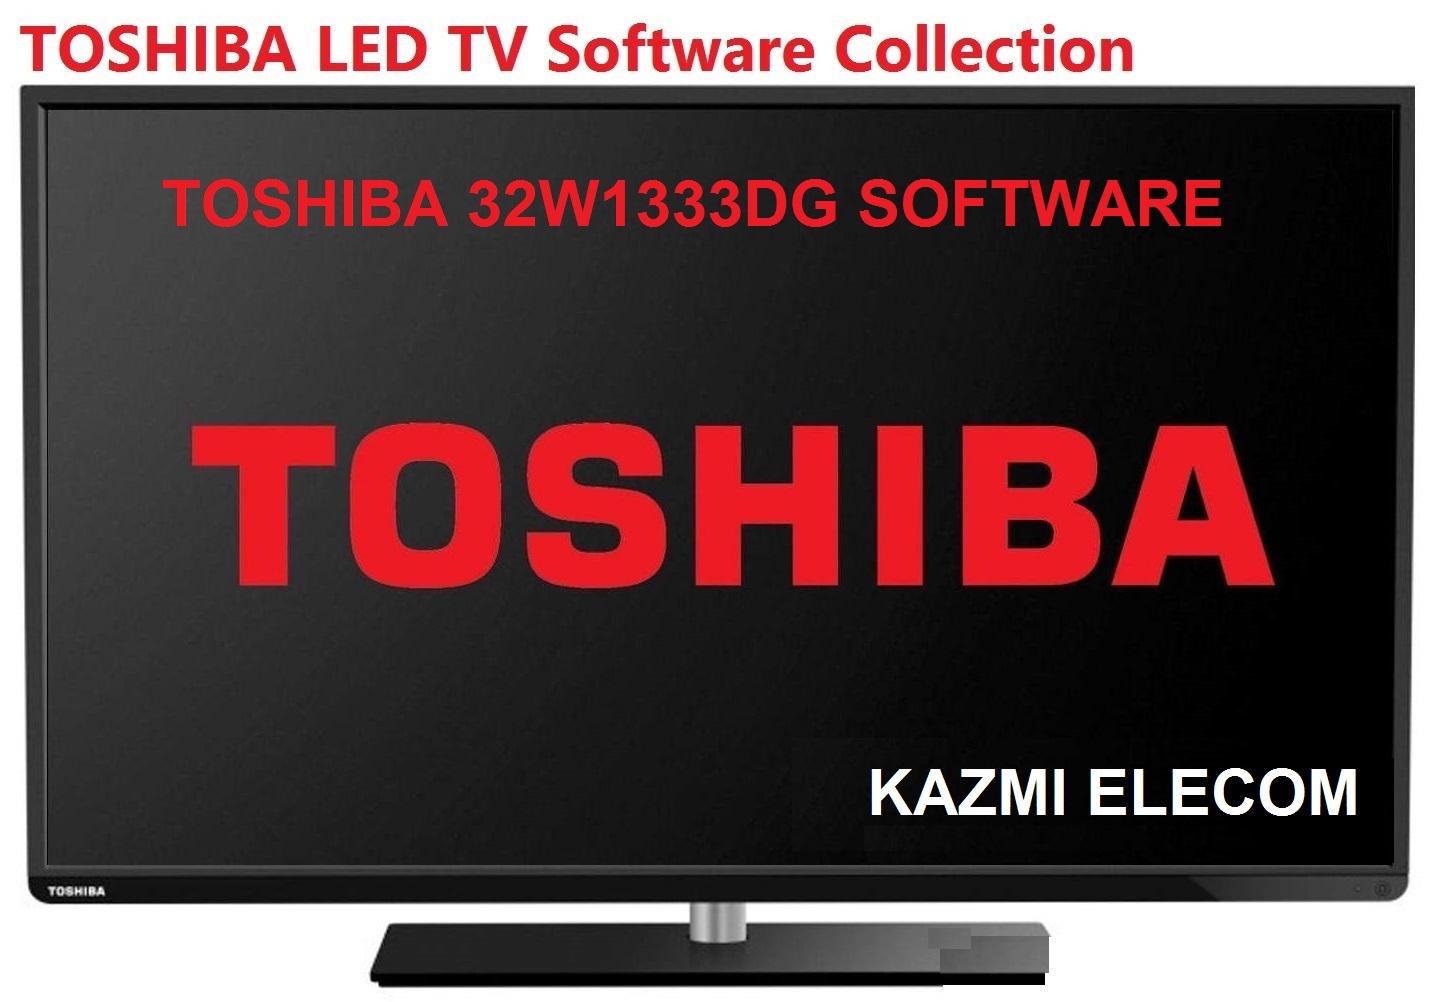 Toshiba 32W1333Dg